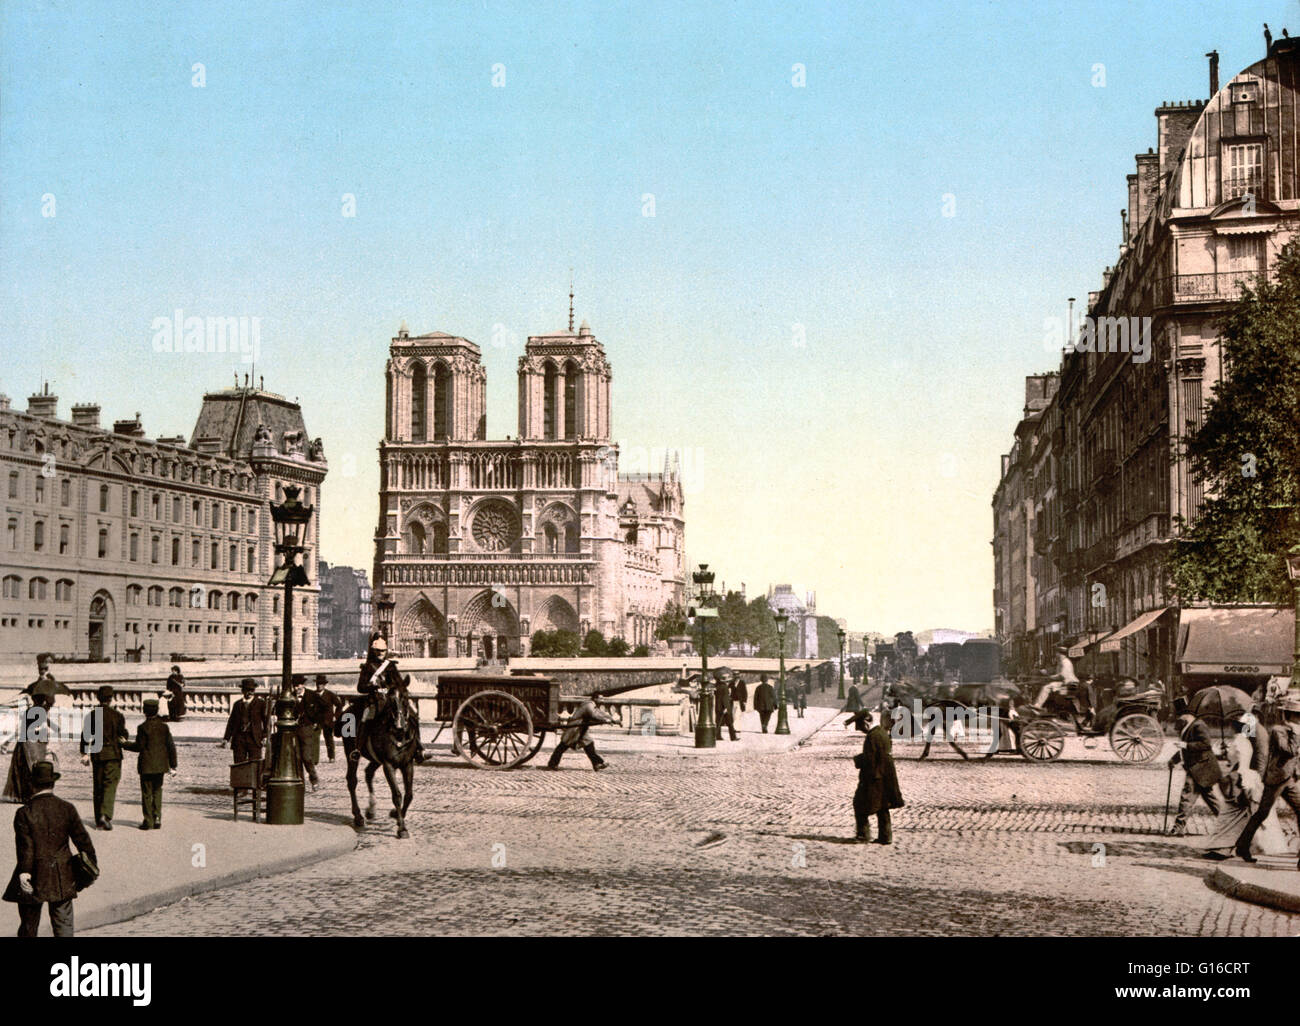 Notre-Dame de Paris (unsere Liebe Frau von Paris) ist eine historische katholische Kathedrale von Paris. Die Kathedrale gilt als eines der schönsten Beispiele der gotischen Architektur und zu den größten und bekanntesten kirchlichen Bauten in der Stockfoto